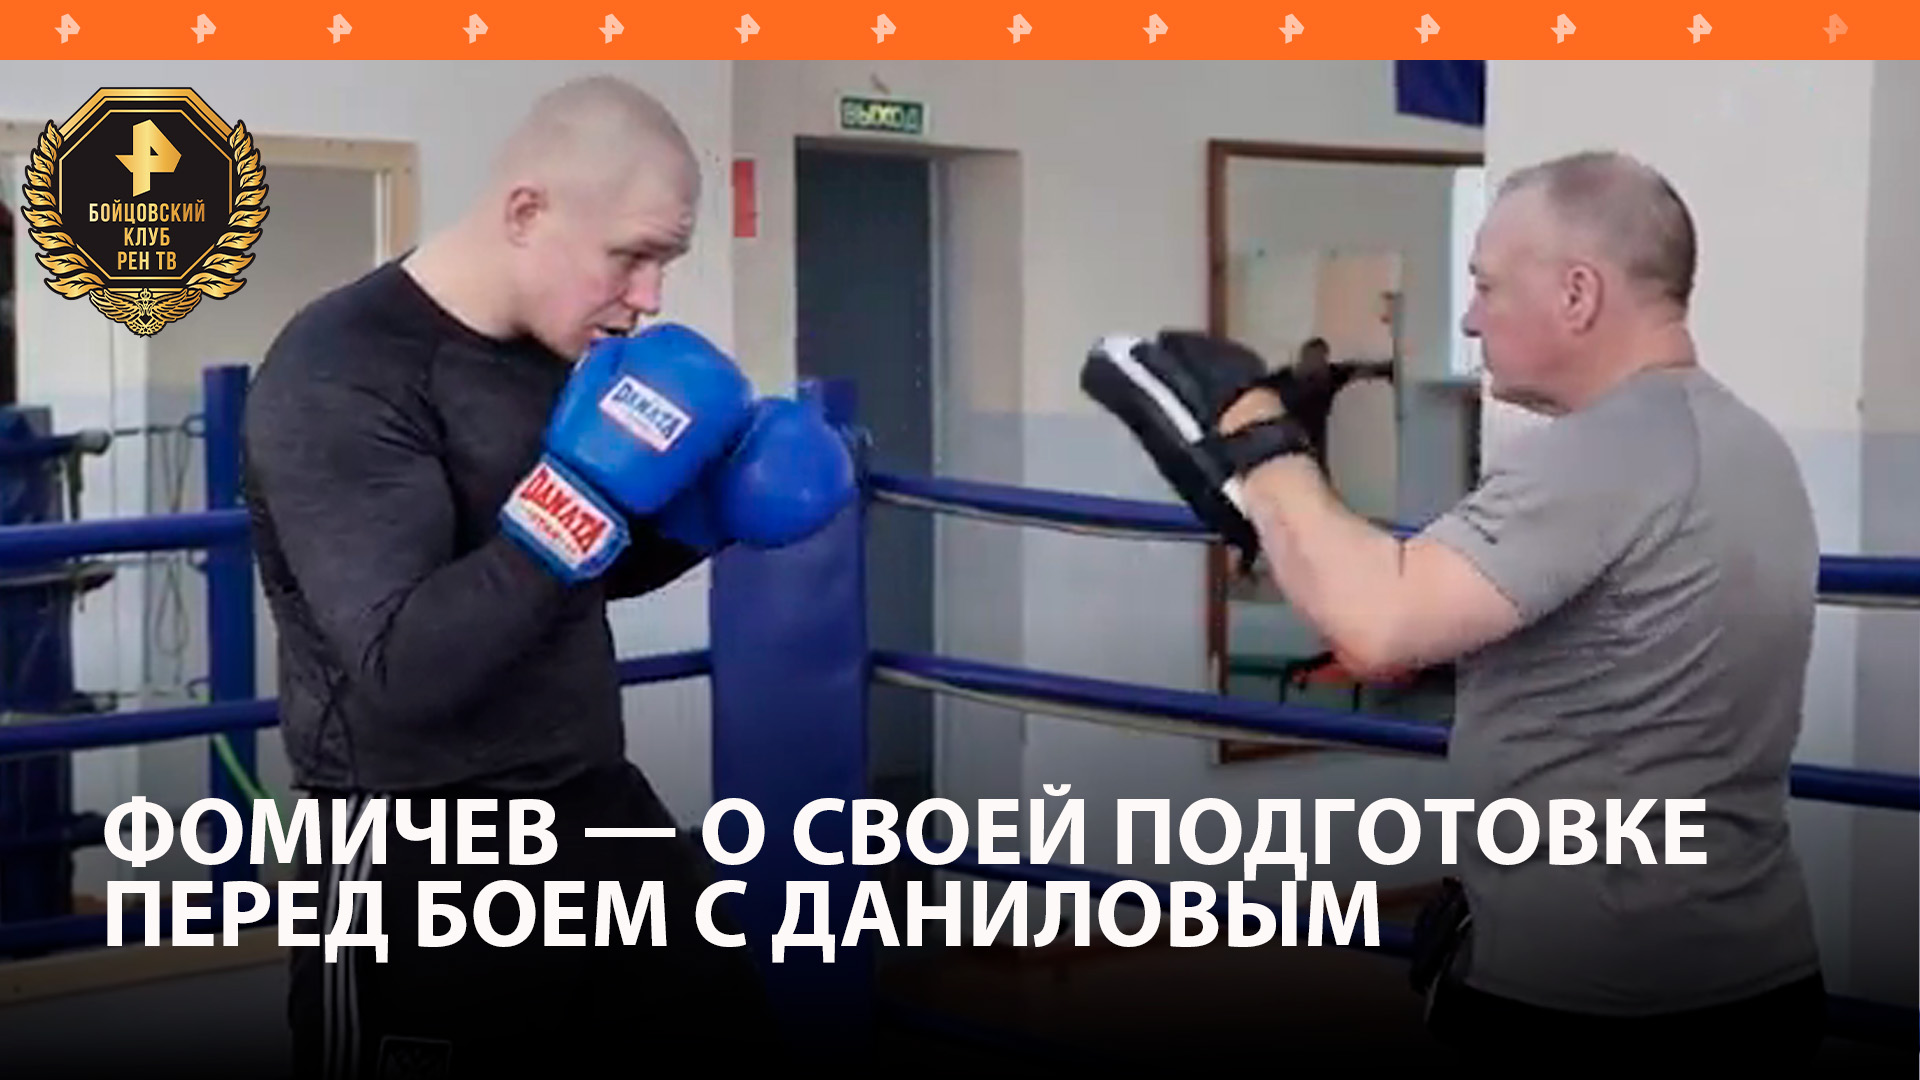 Фомичев показал, как тренируется перед боем с белорусом Даниловым / Бойцовский клуб РЕН ТВ